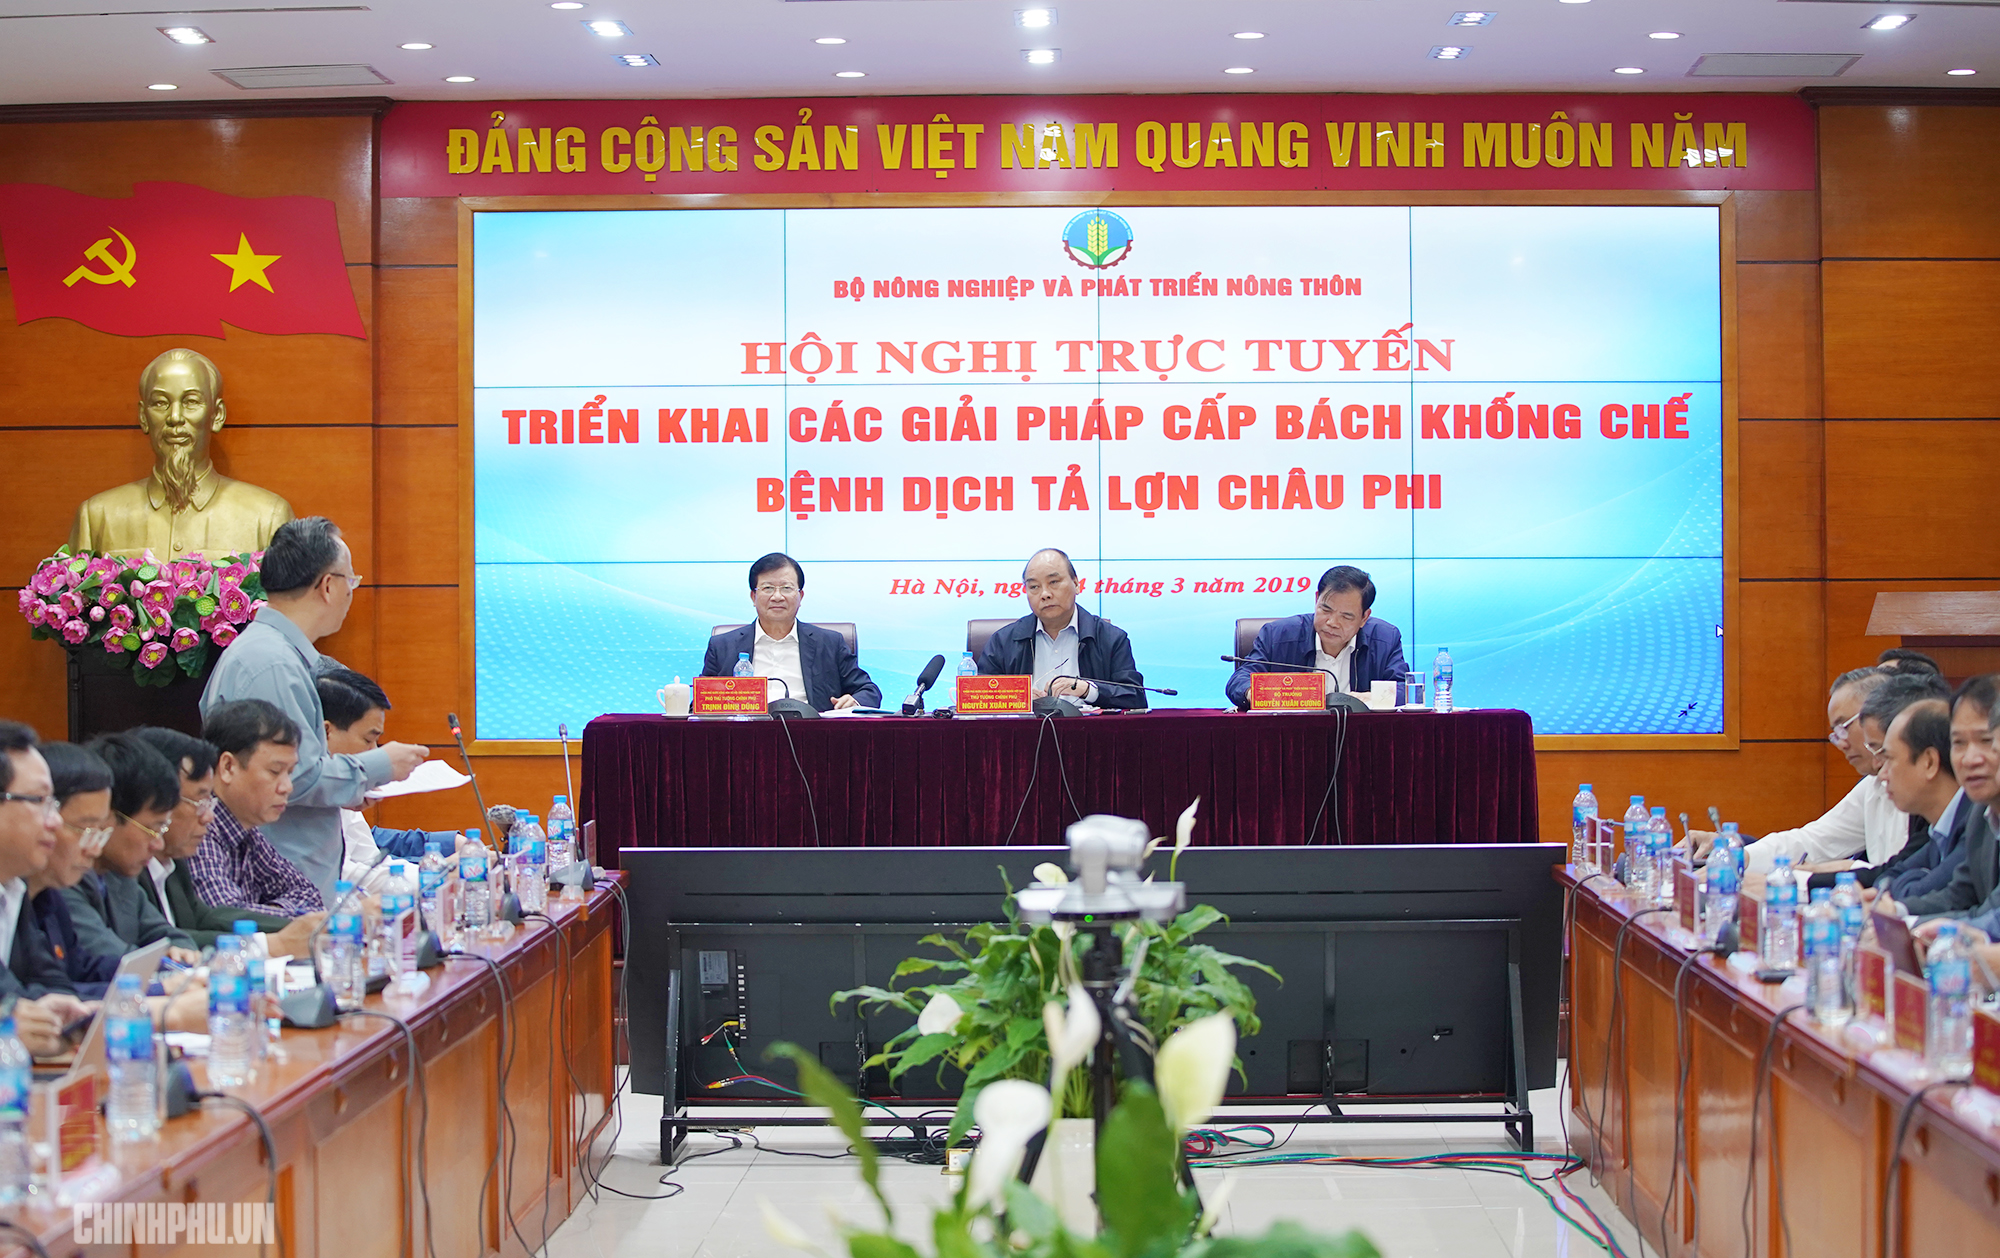 Thủ tướng Nguyễn Xuân Phúc chủ trì Hội nghị trực tuyến triển khai các giải pháp cấp bách khống chế bệnh dịch tả lợn châu Phi.